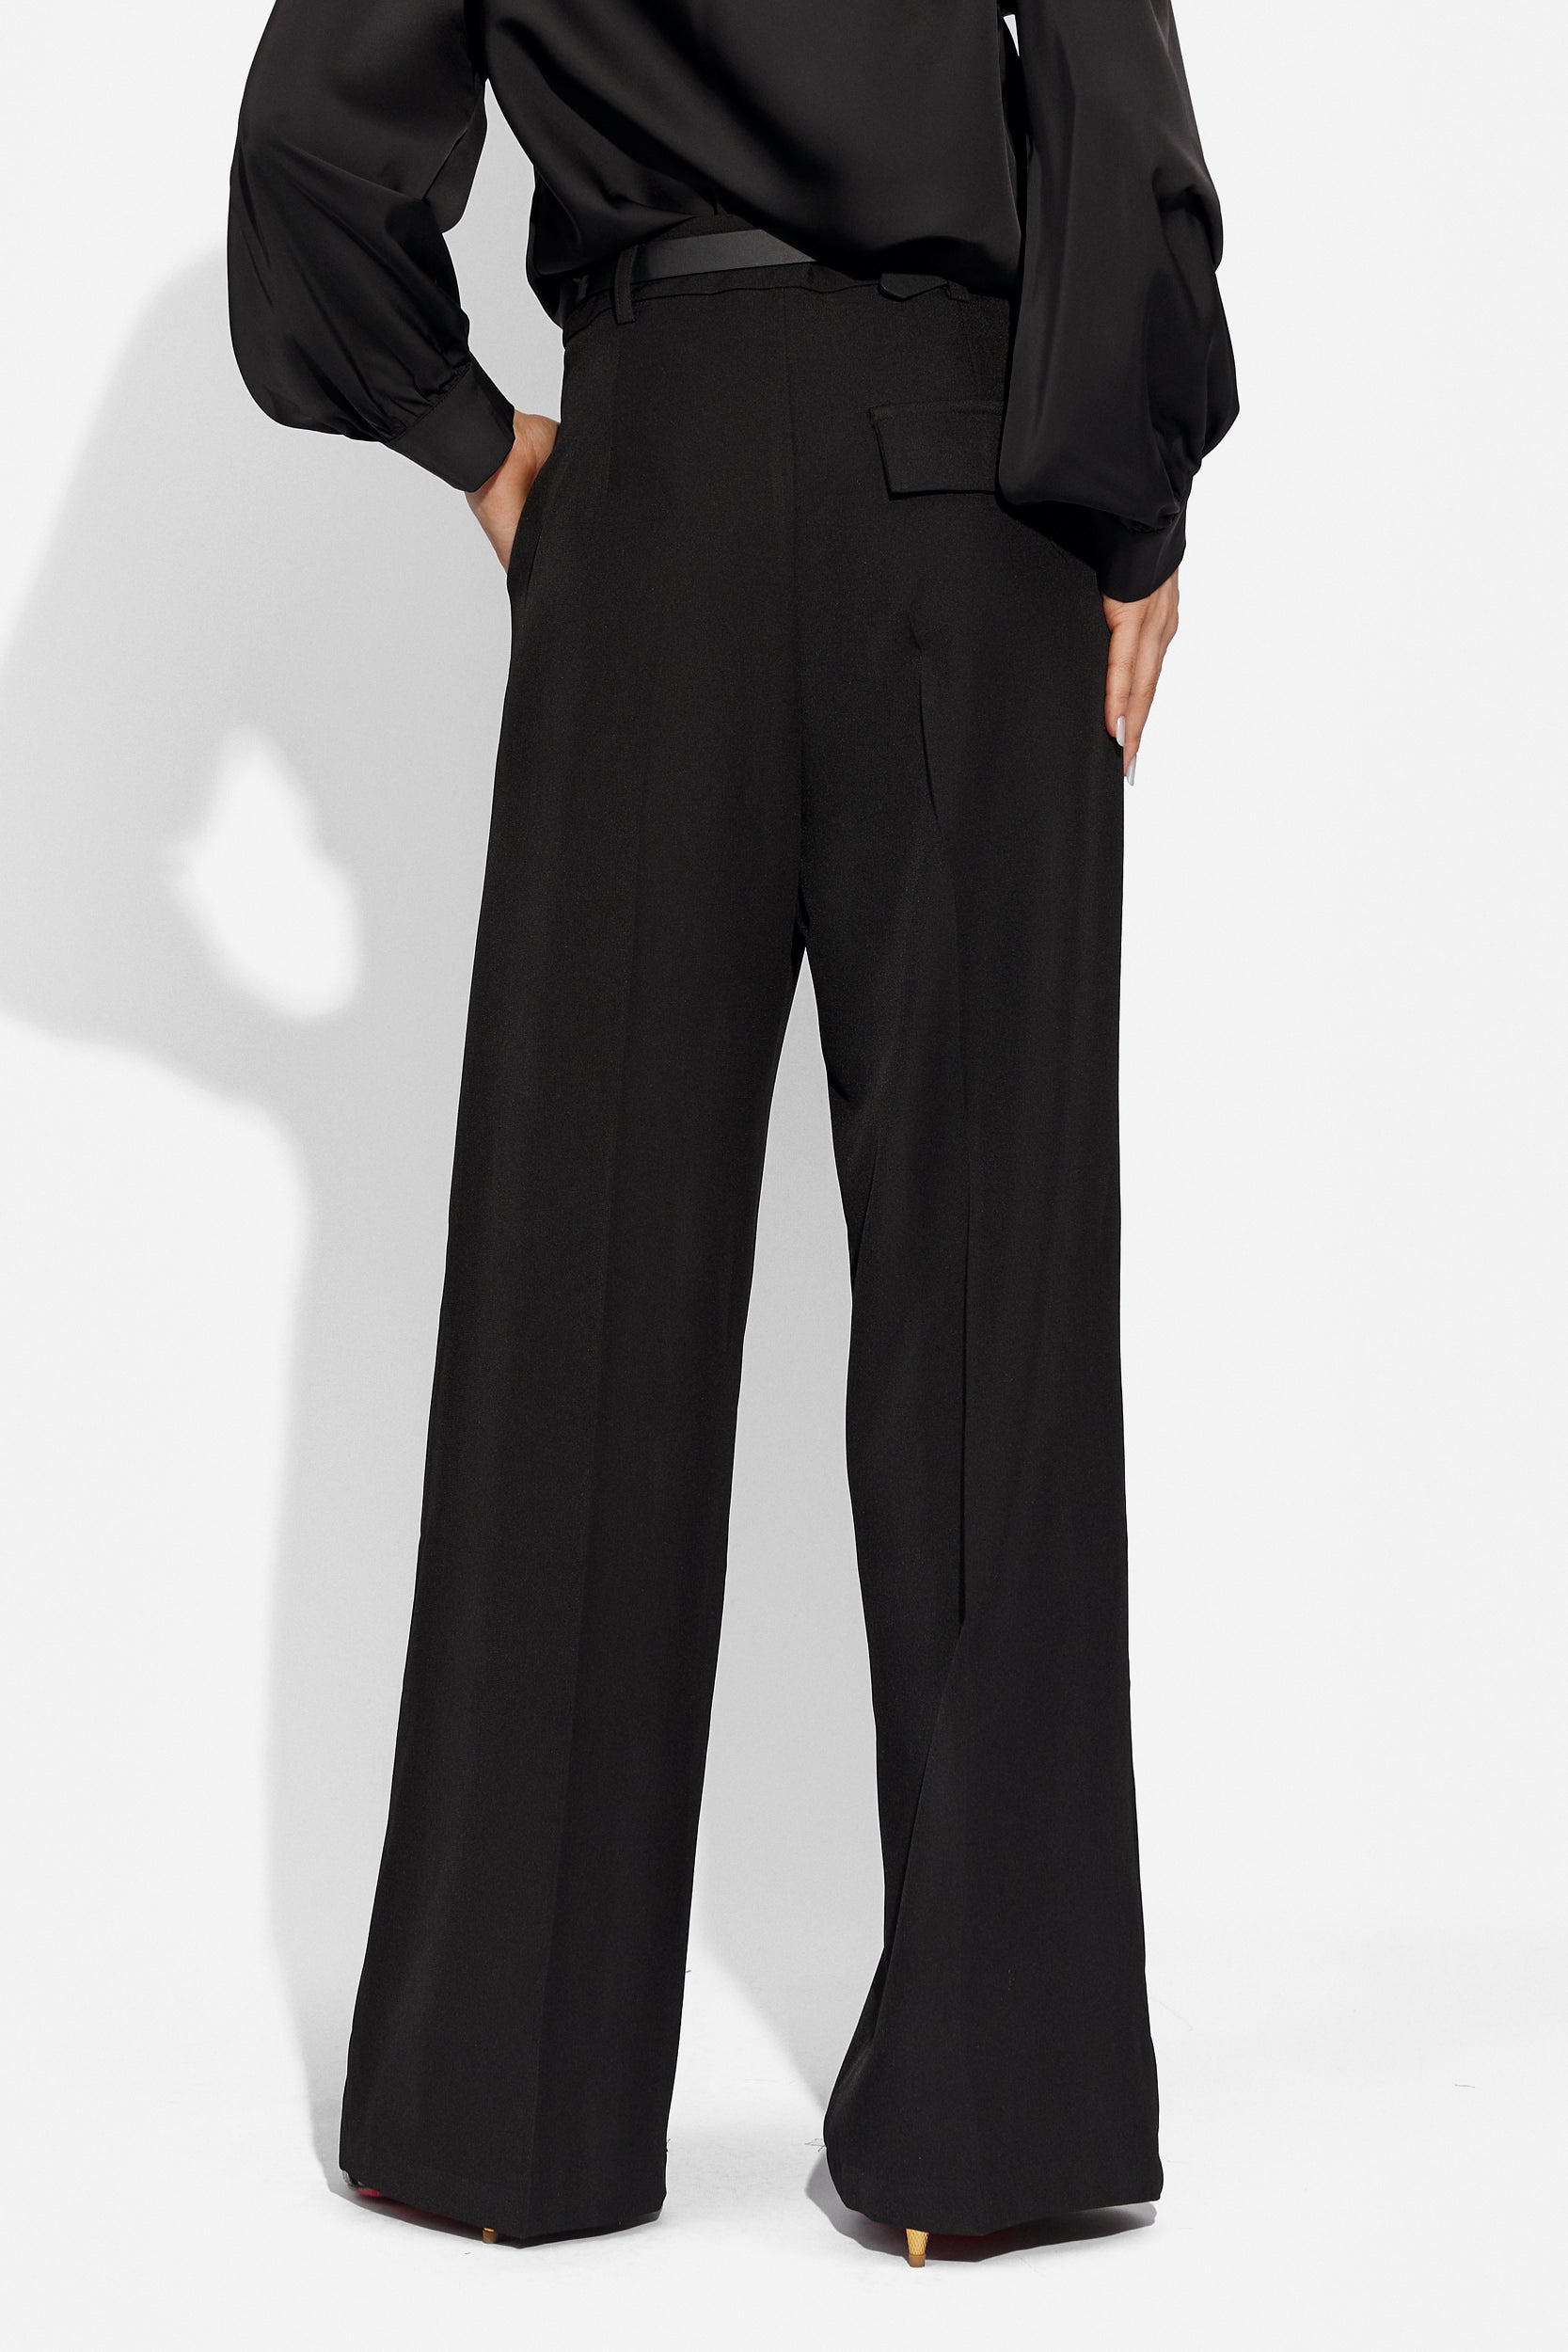 Ladies' black elegant trousers Pantsy Bogas